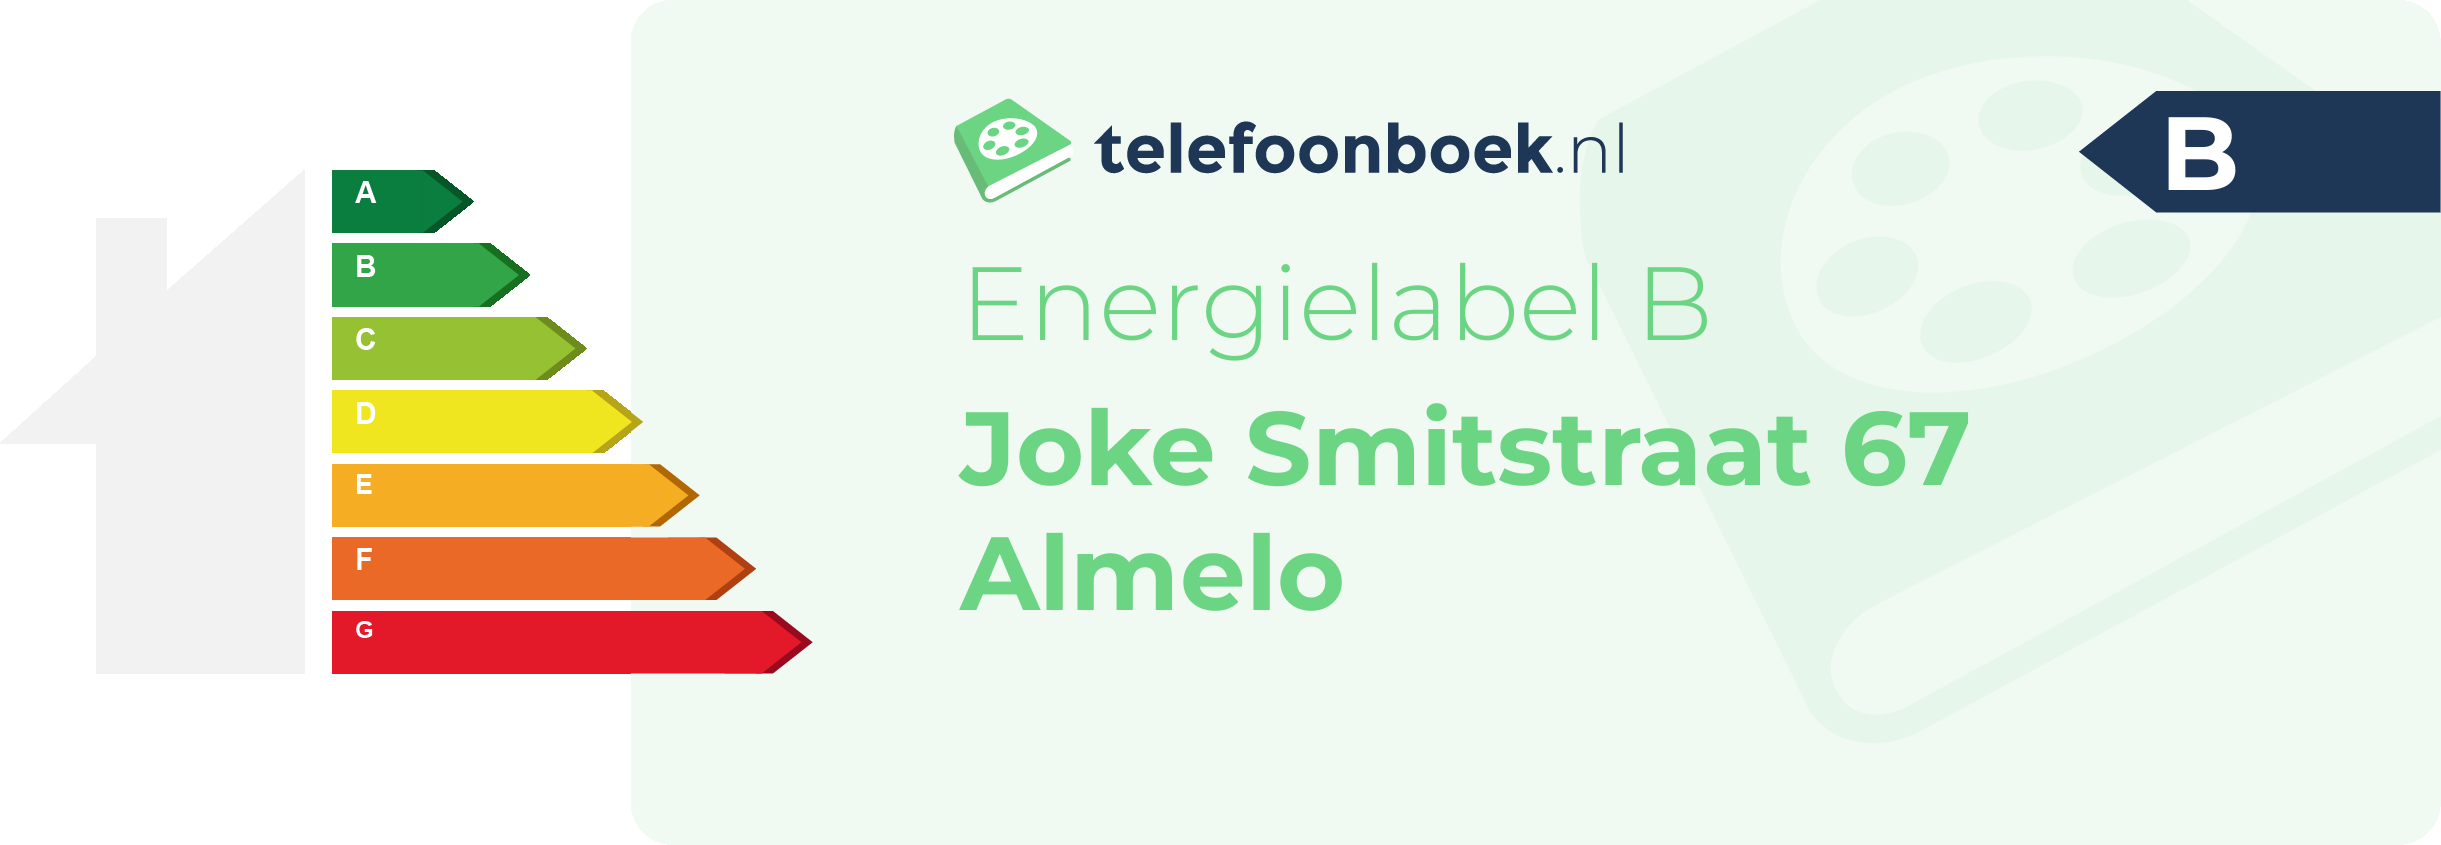 Energielabel Joke Smitstraat 67 Almelo